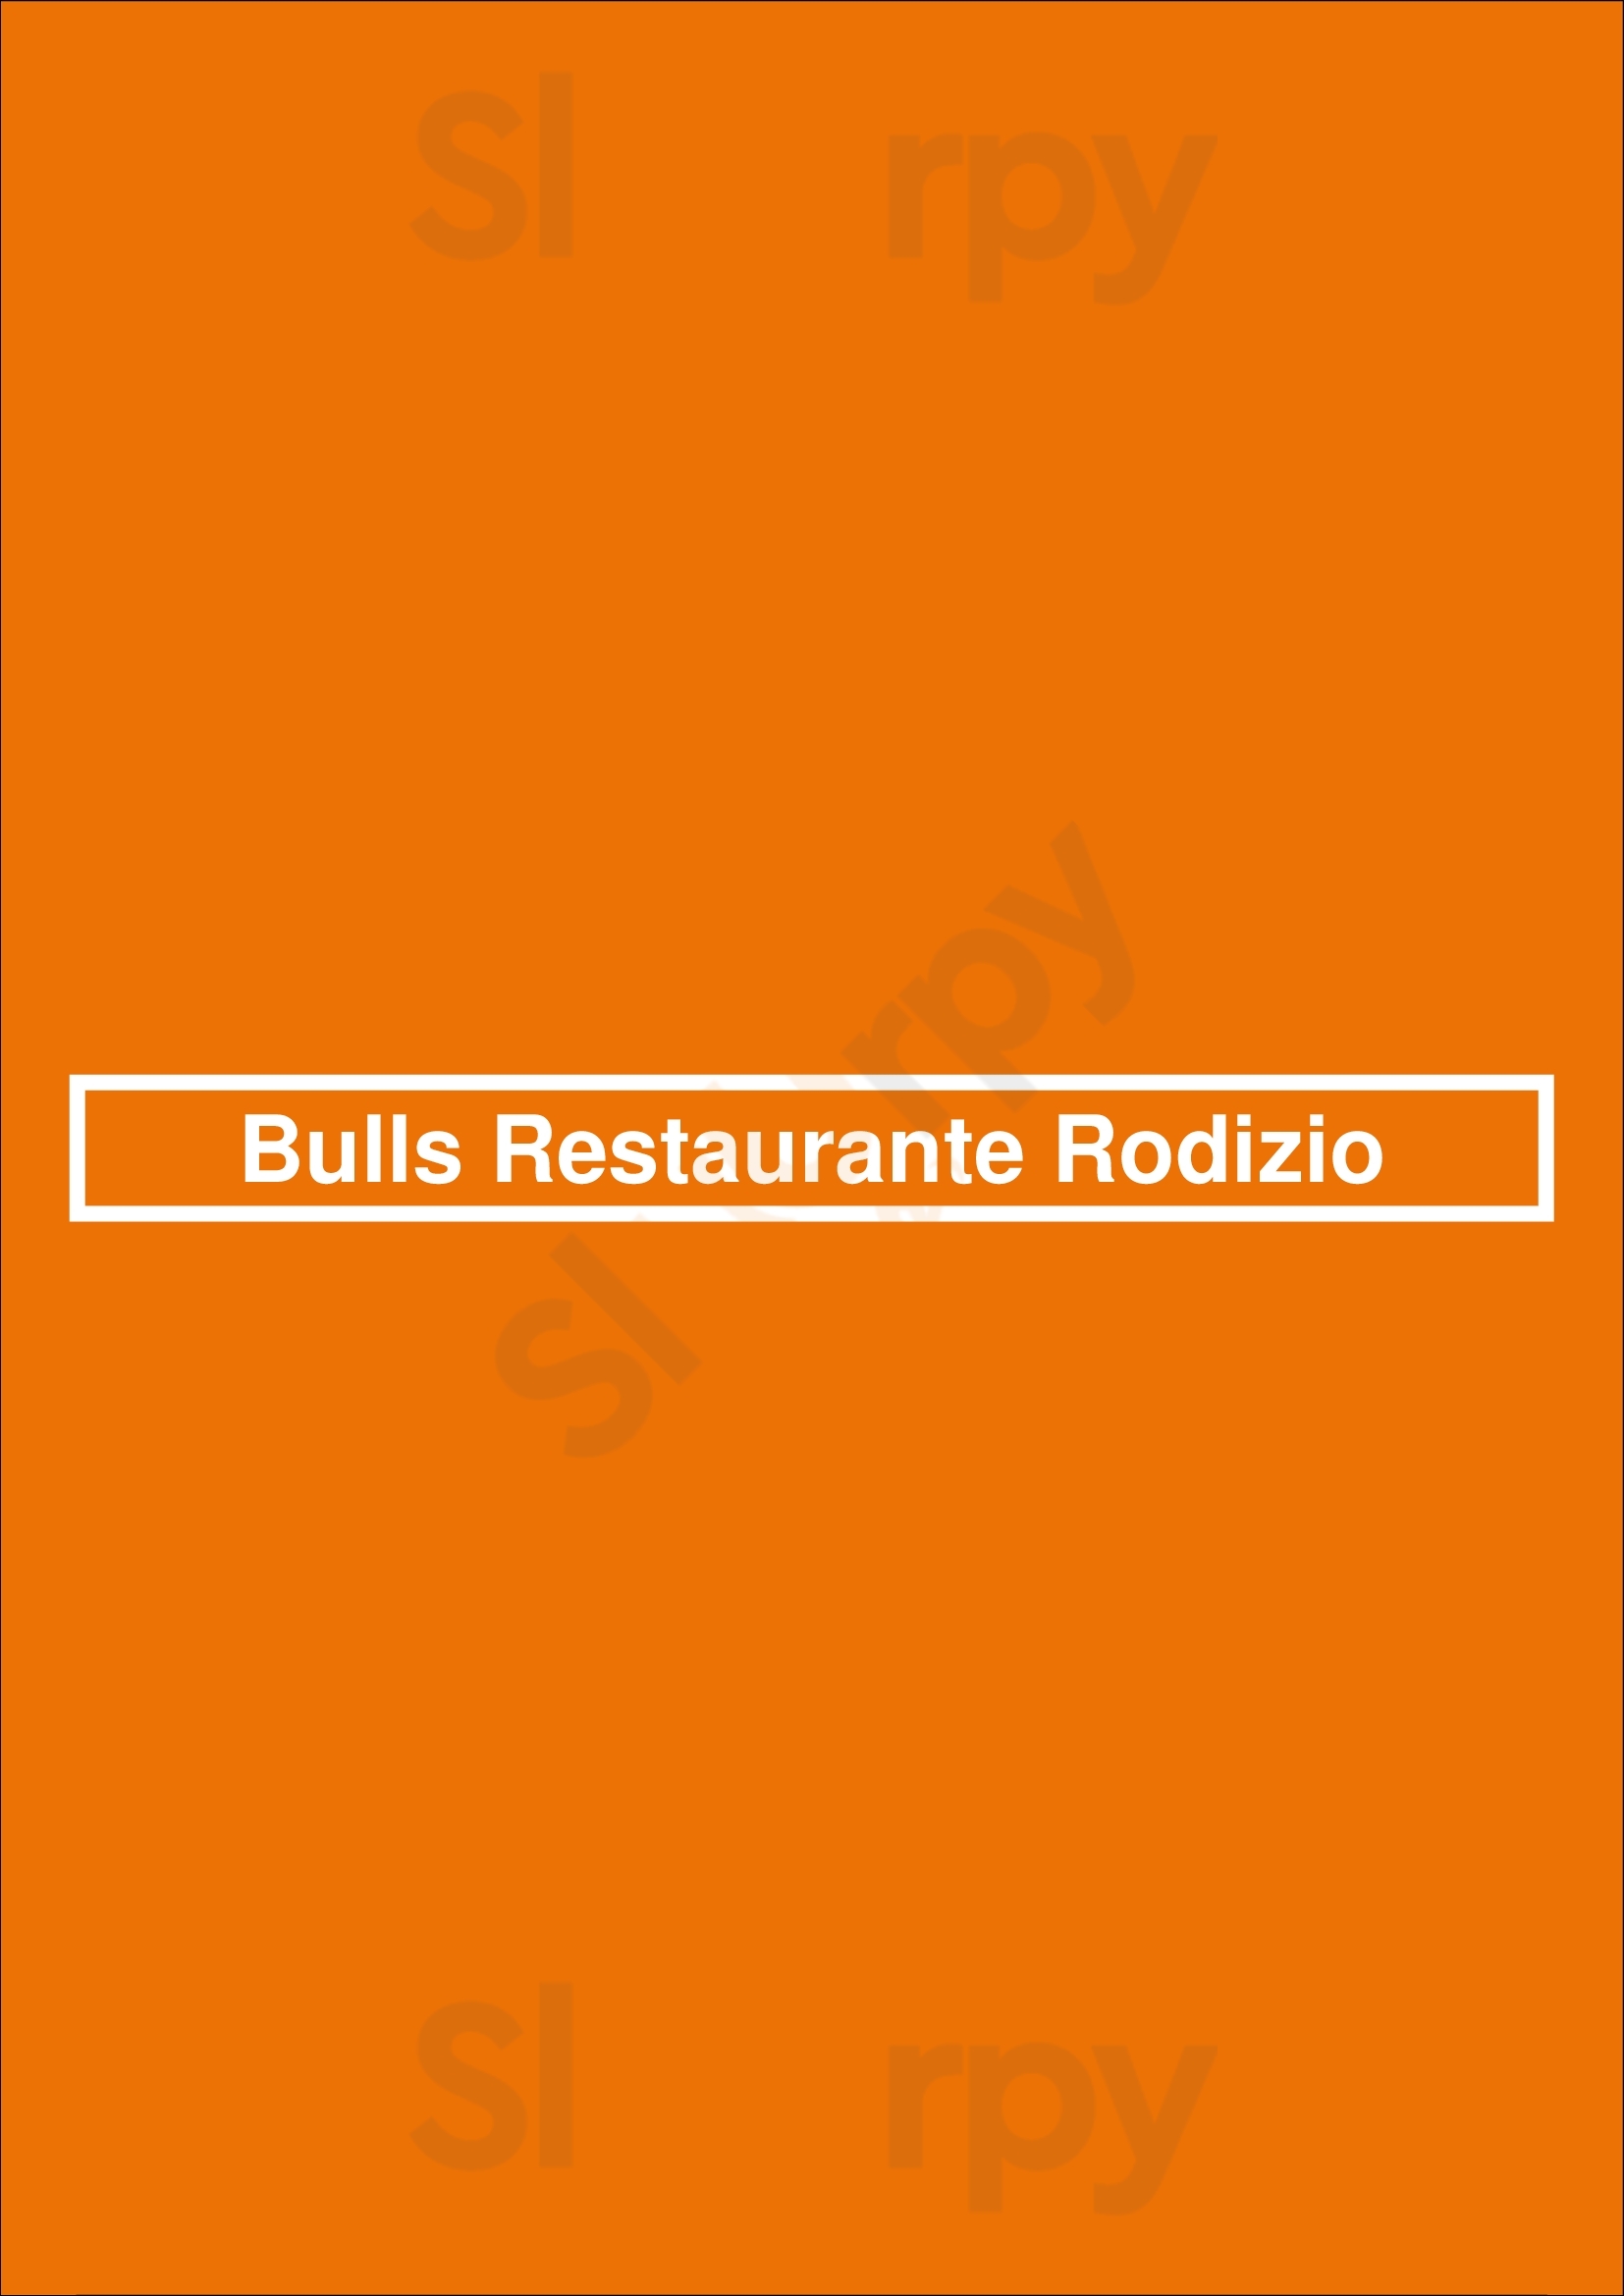 Bulls - Rodizio - Steakhouse Matosinhos Menu - 1